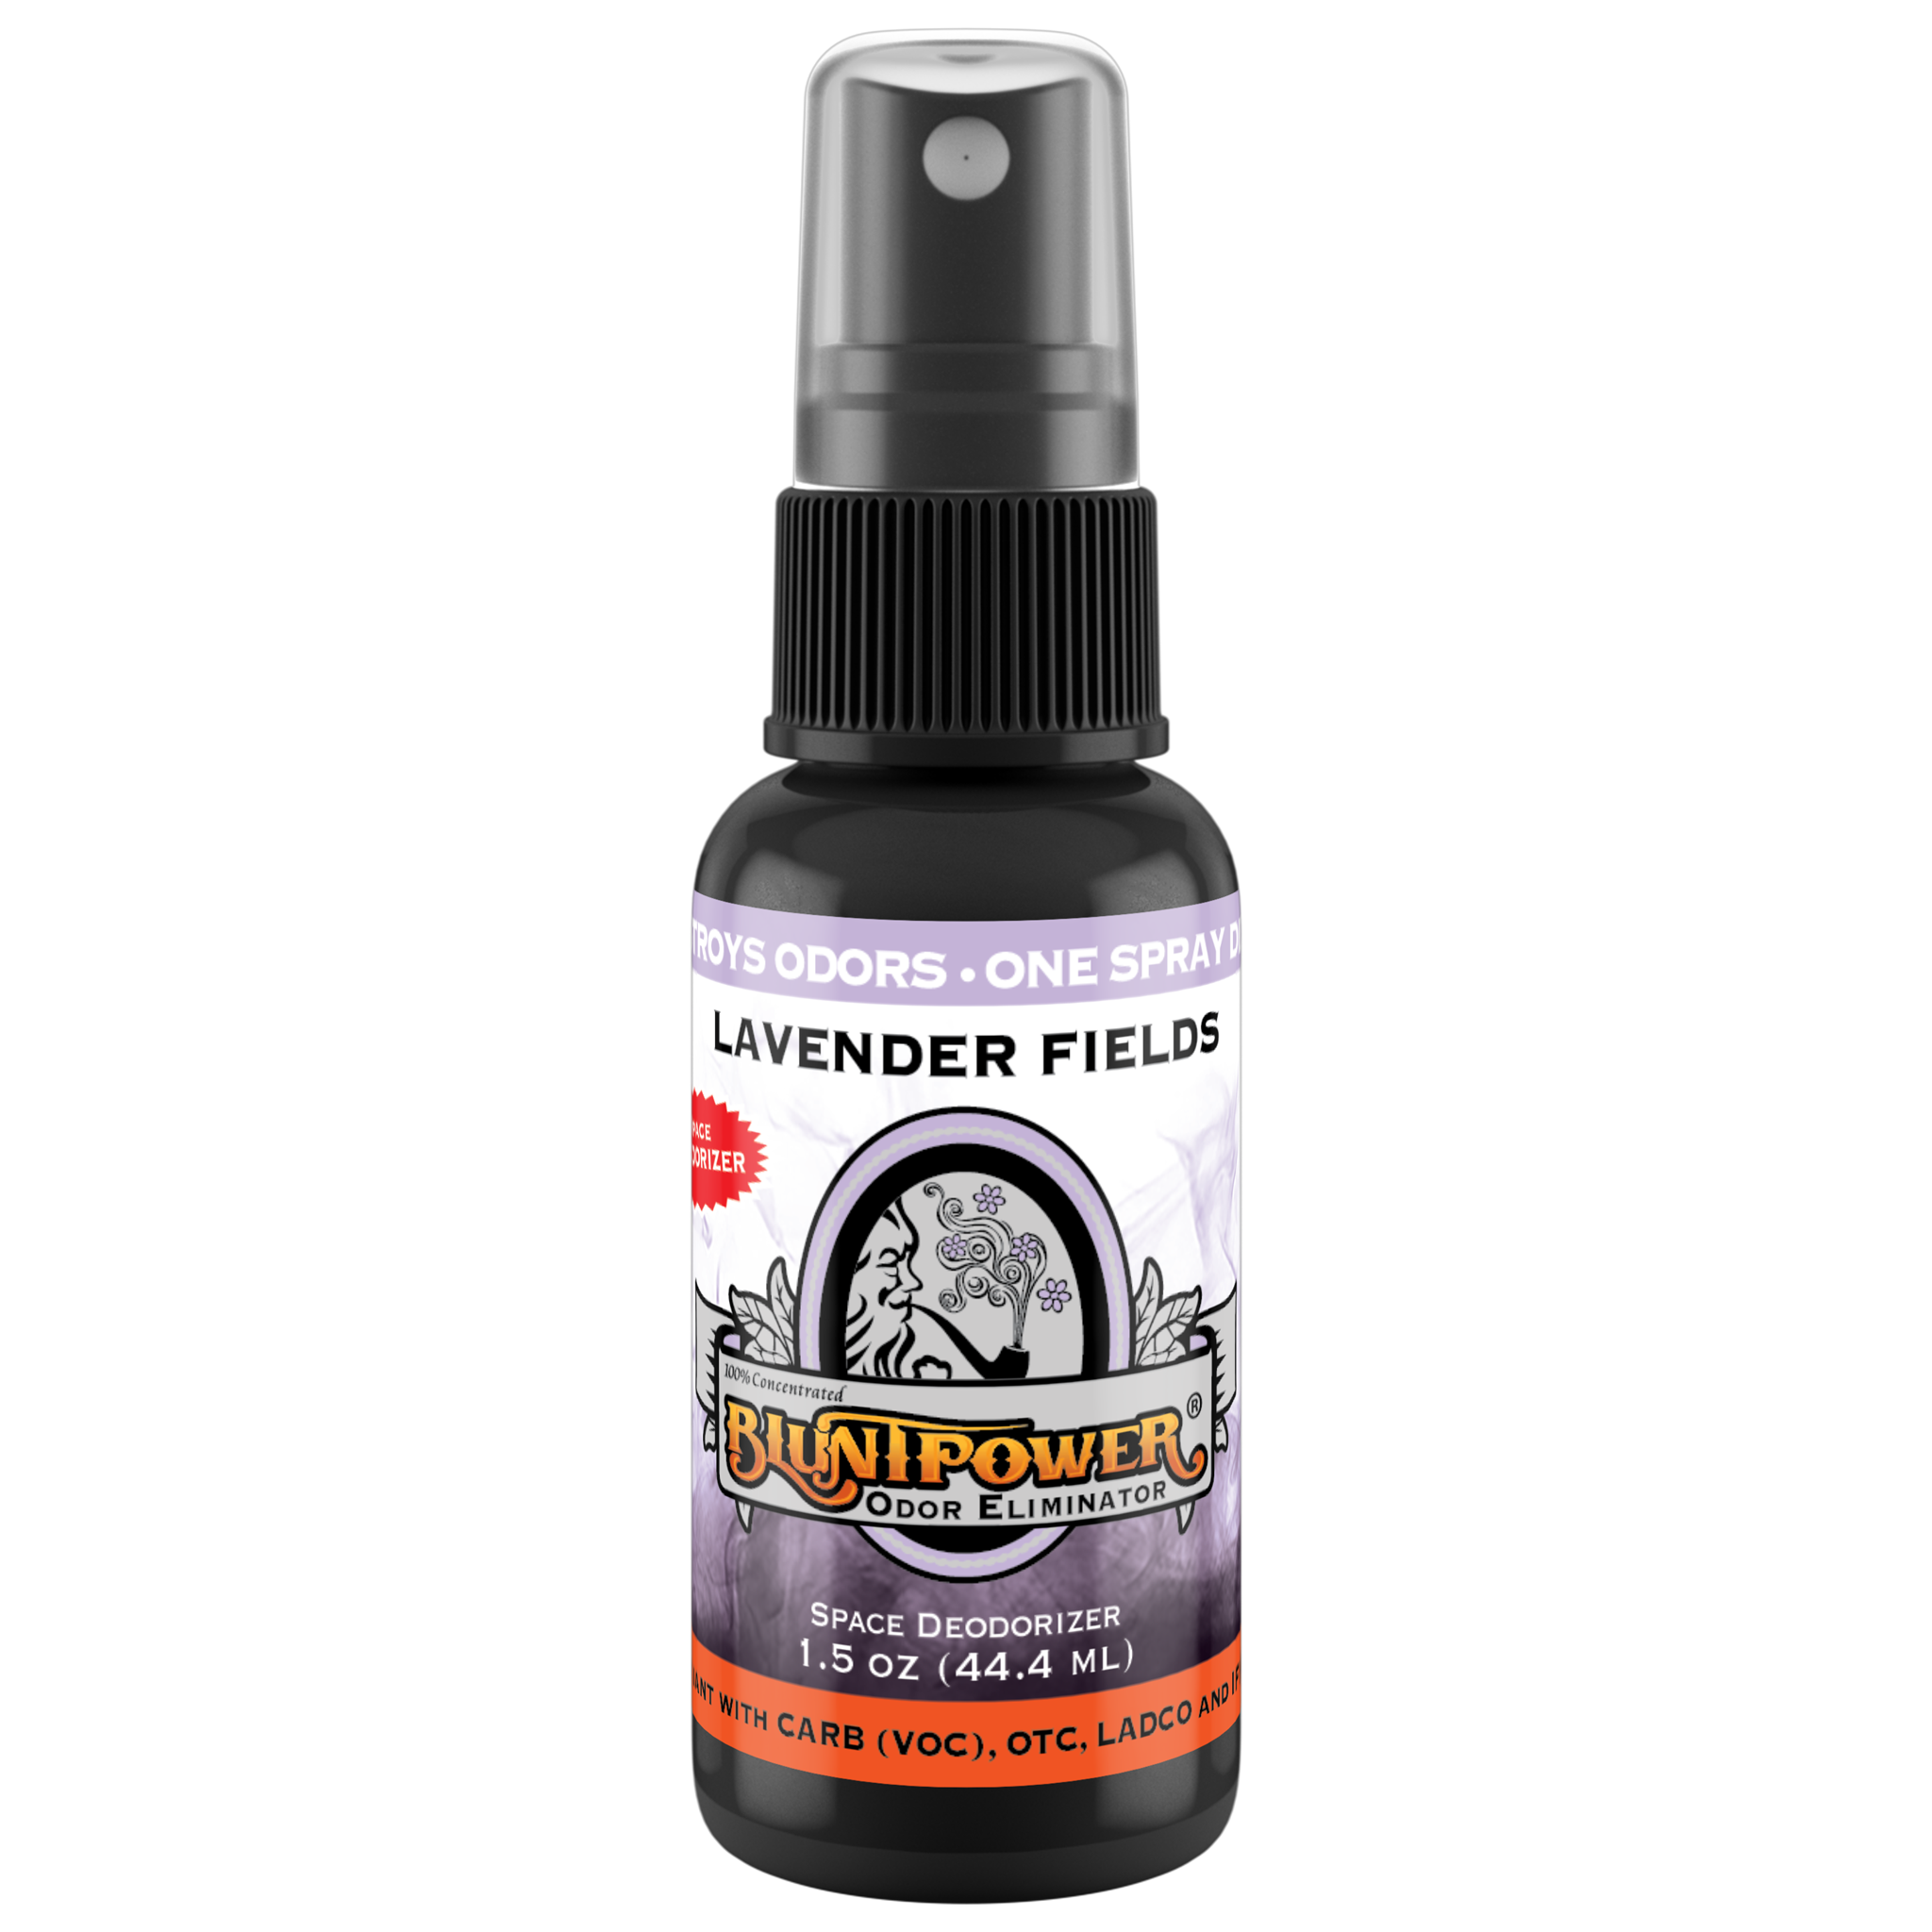 BluntPower Odor Eliminator - Lavender Fields Scent